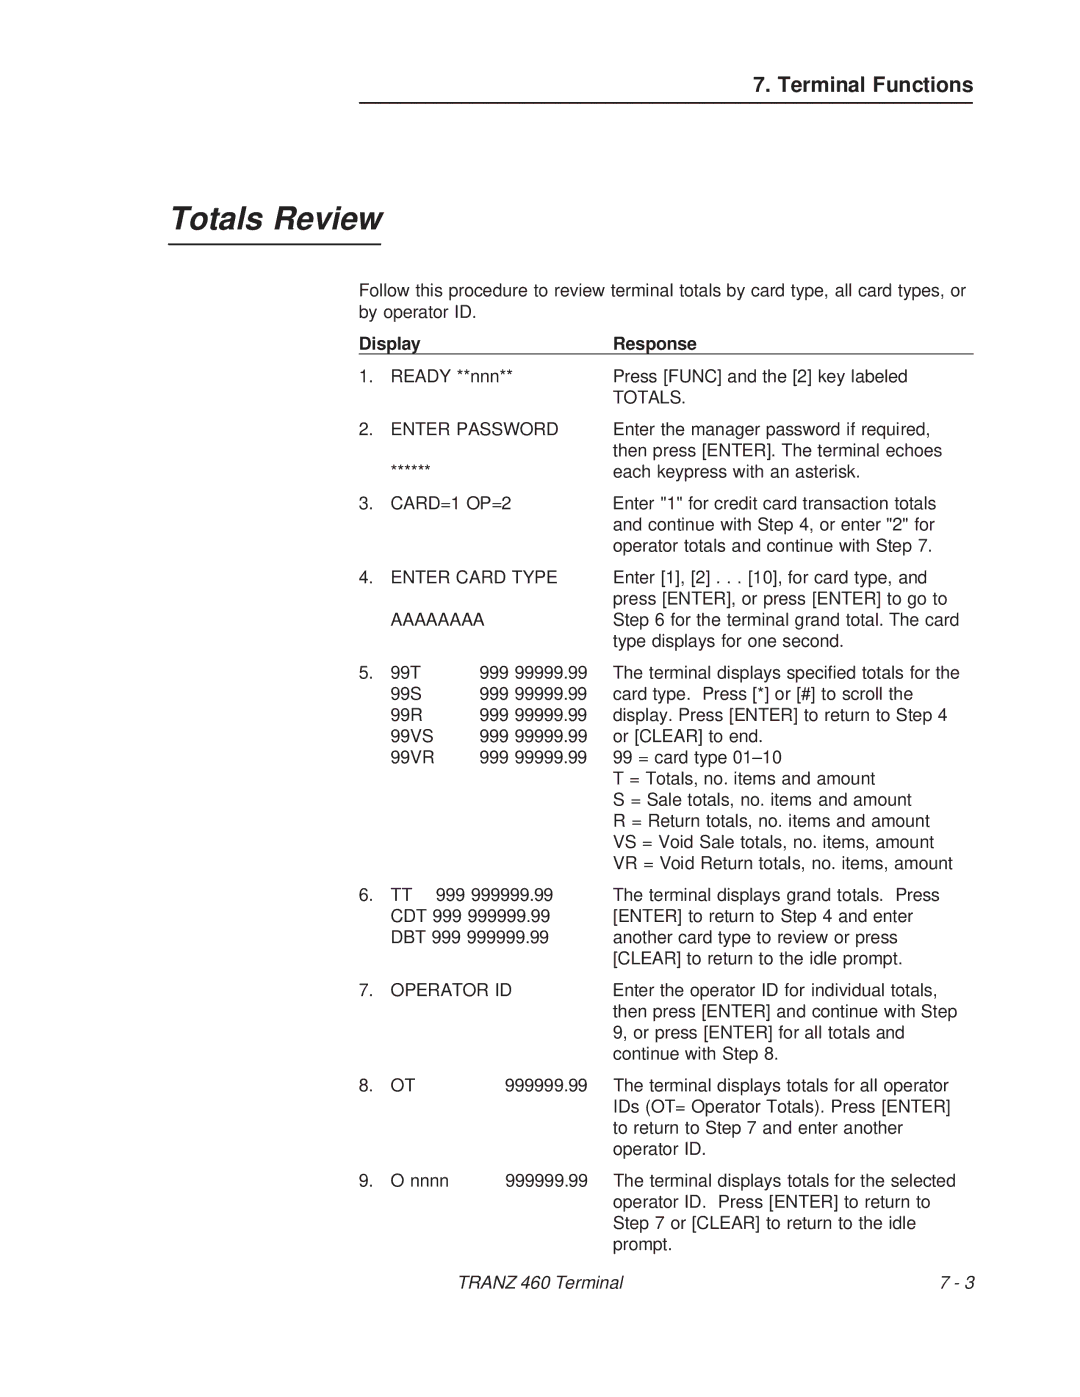 VeriFone TRANZ 460 manual Totals Review, CARD=1 OP=2, Aaaaaaaa 